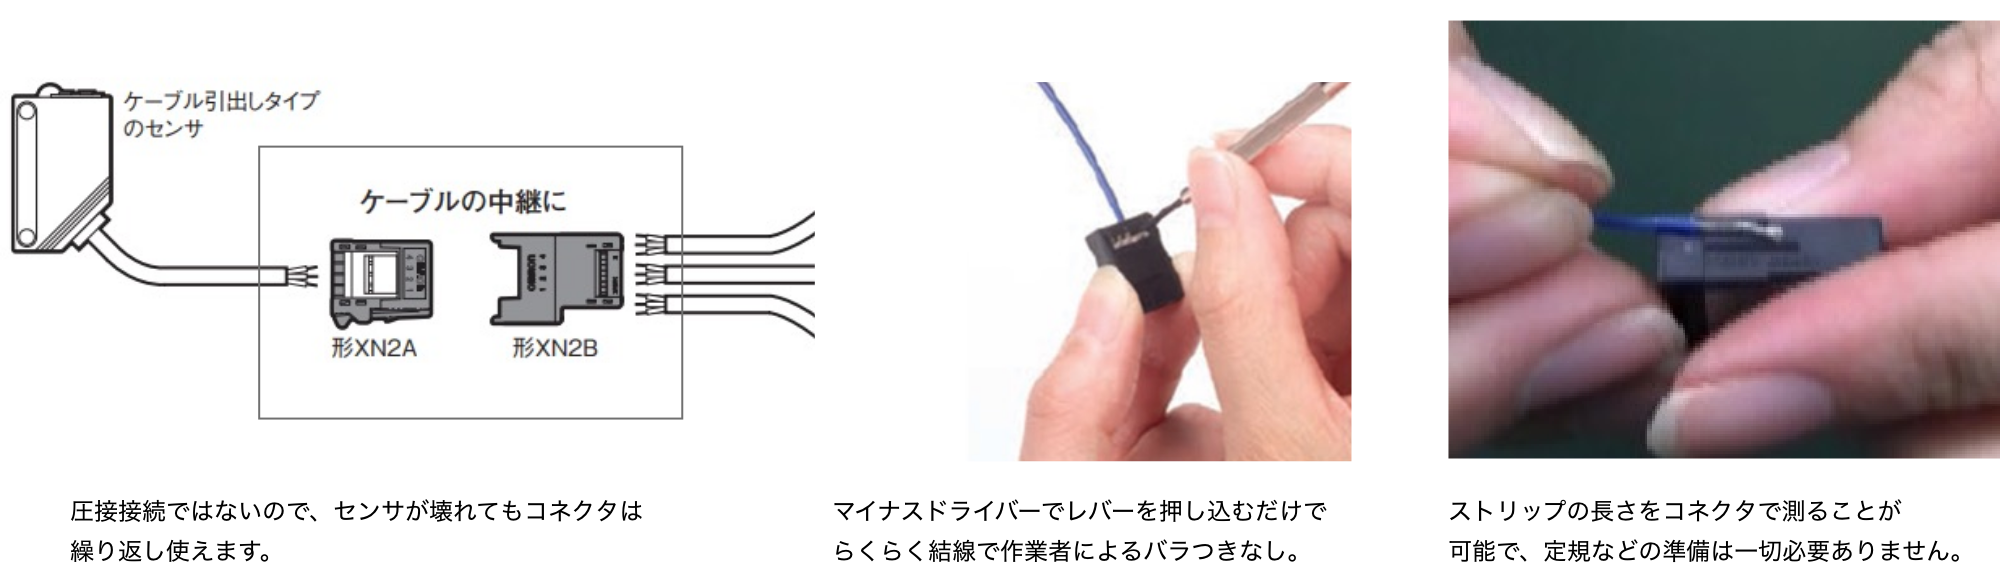 圧接接続ではないので、センサが壊れてもコネクタは繰り返し使えます。マイナスドライバーでレバーを押し込むだけでらくらく結線で作業者によるバラつきなし。ストリップの長さをコネクタで測ること可能で、定規などの準備は一切必要ありません。